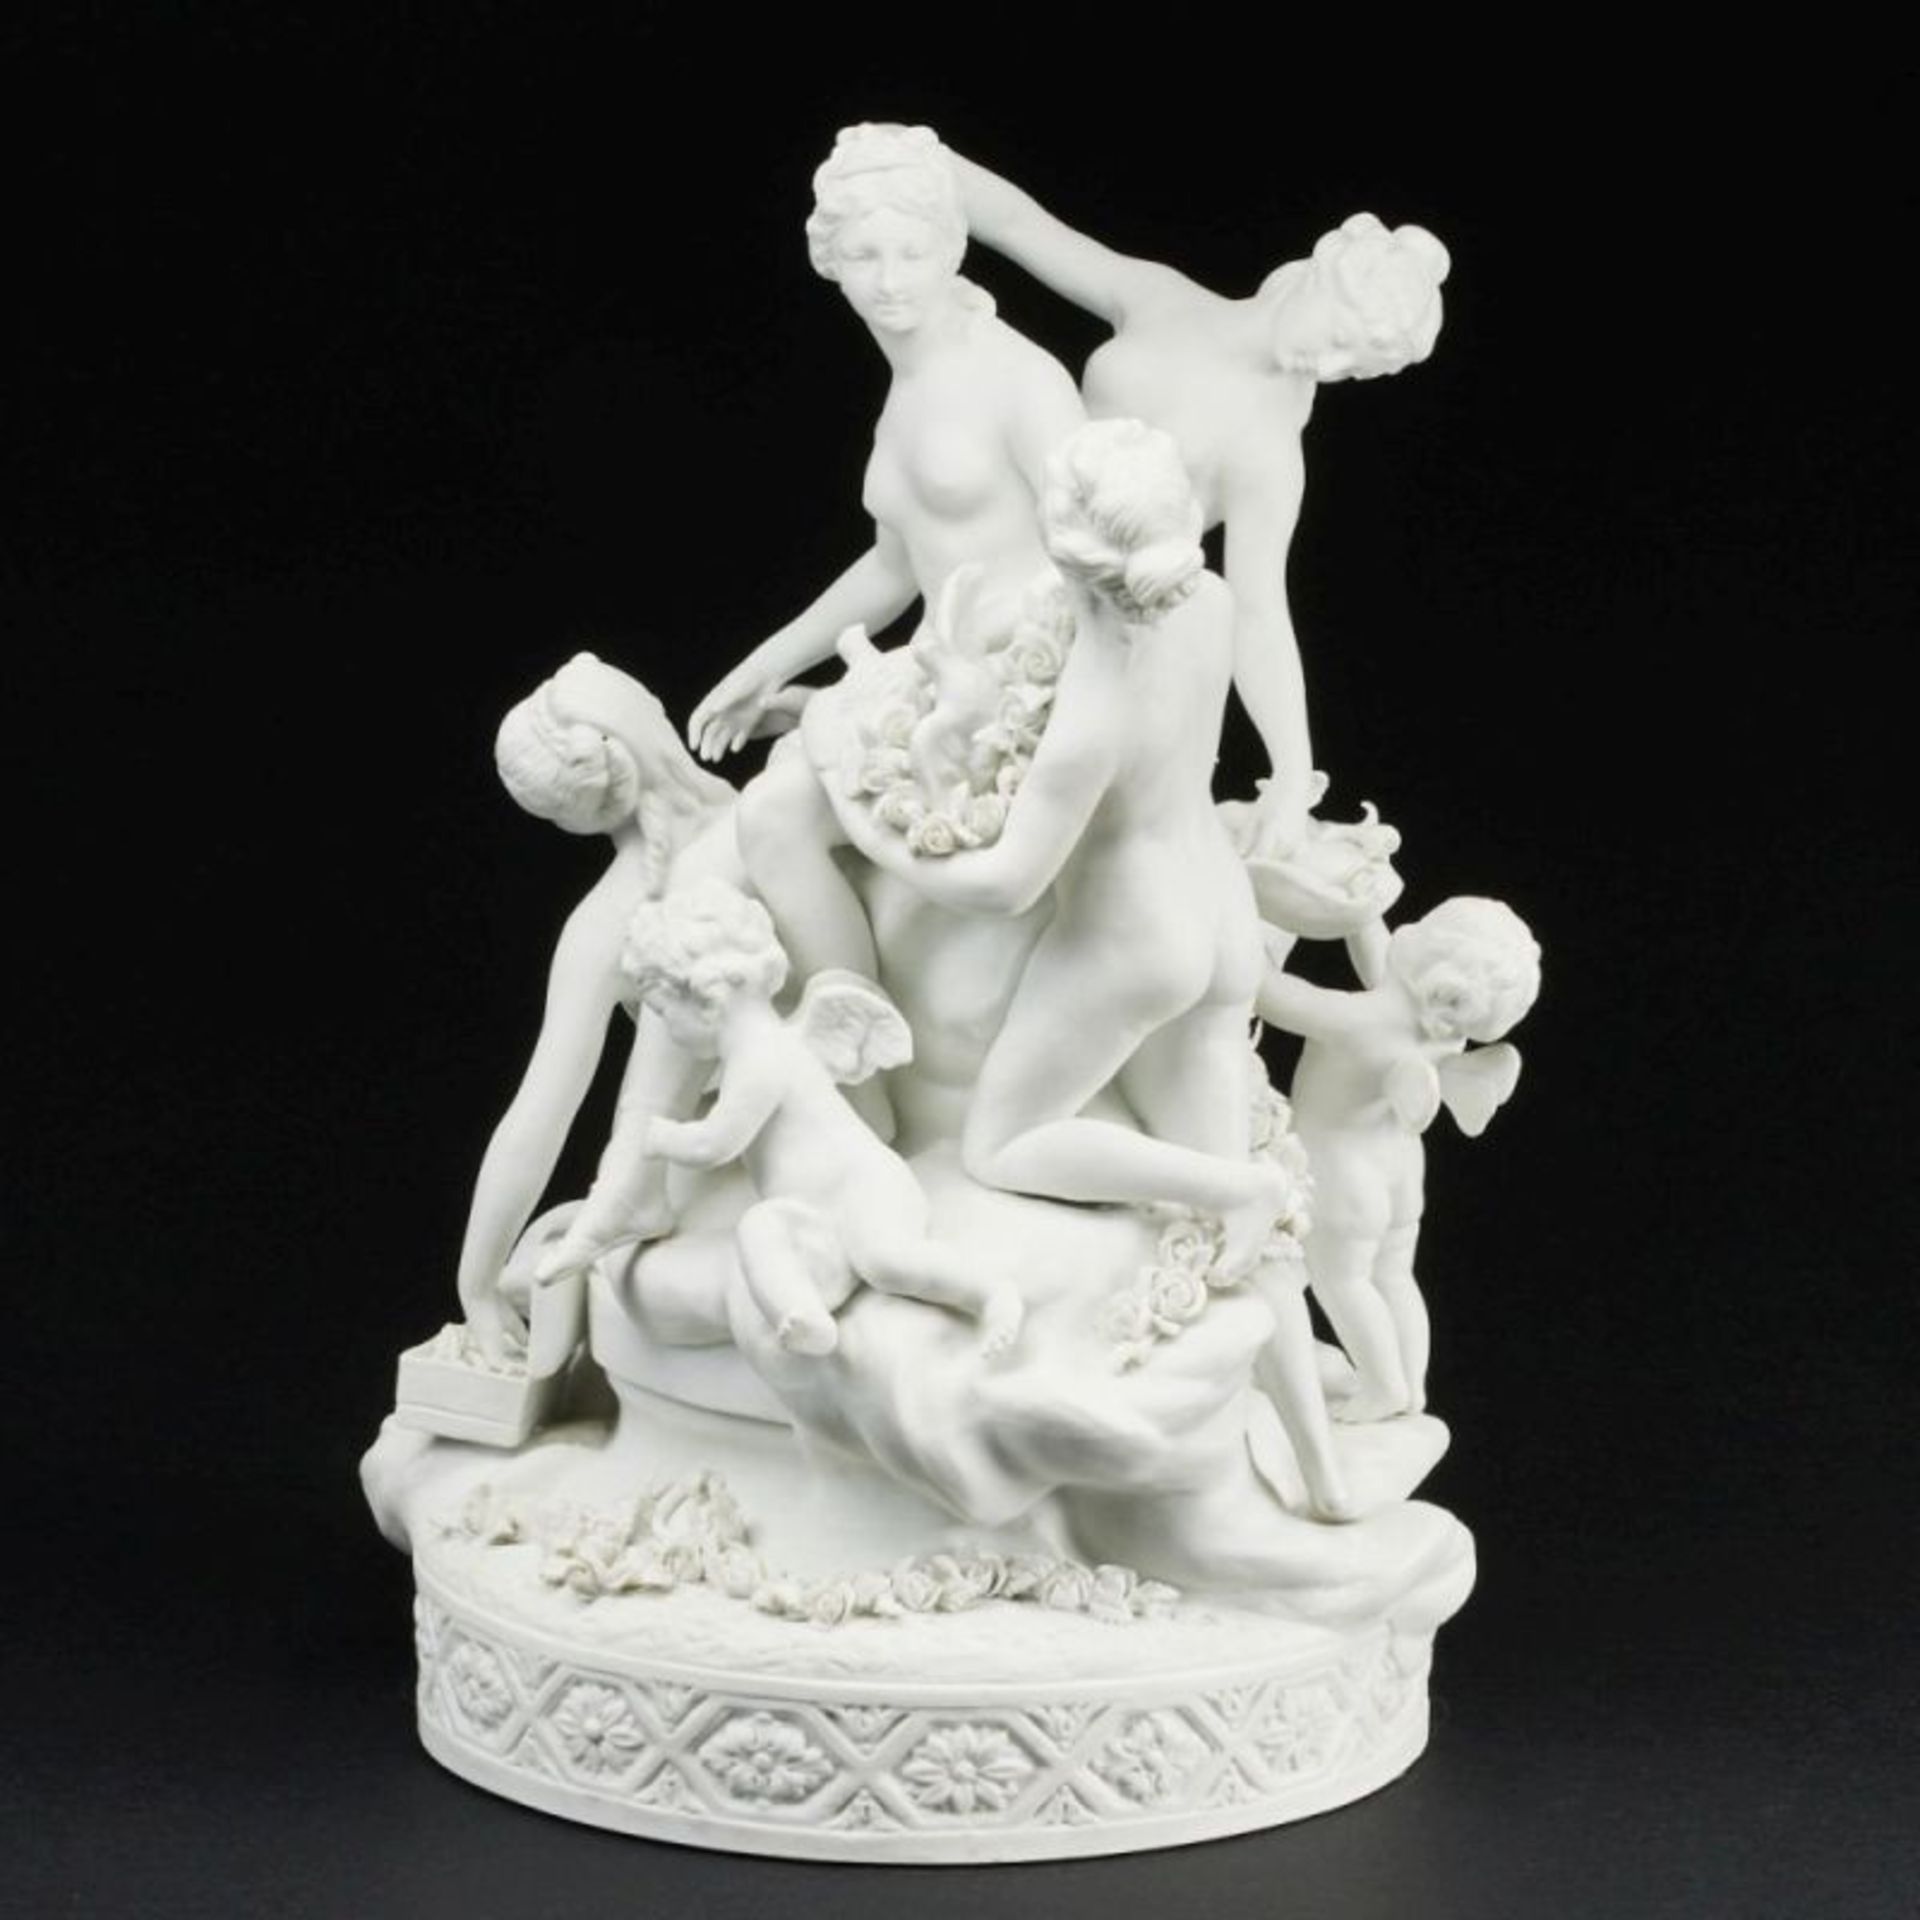 Figurengruppe Toilette der Venus / La Toilette de Venus. Manufacture Nationale de Porcelaine, Sèvres - Image 2 of 3